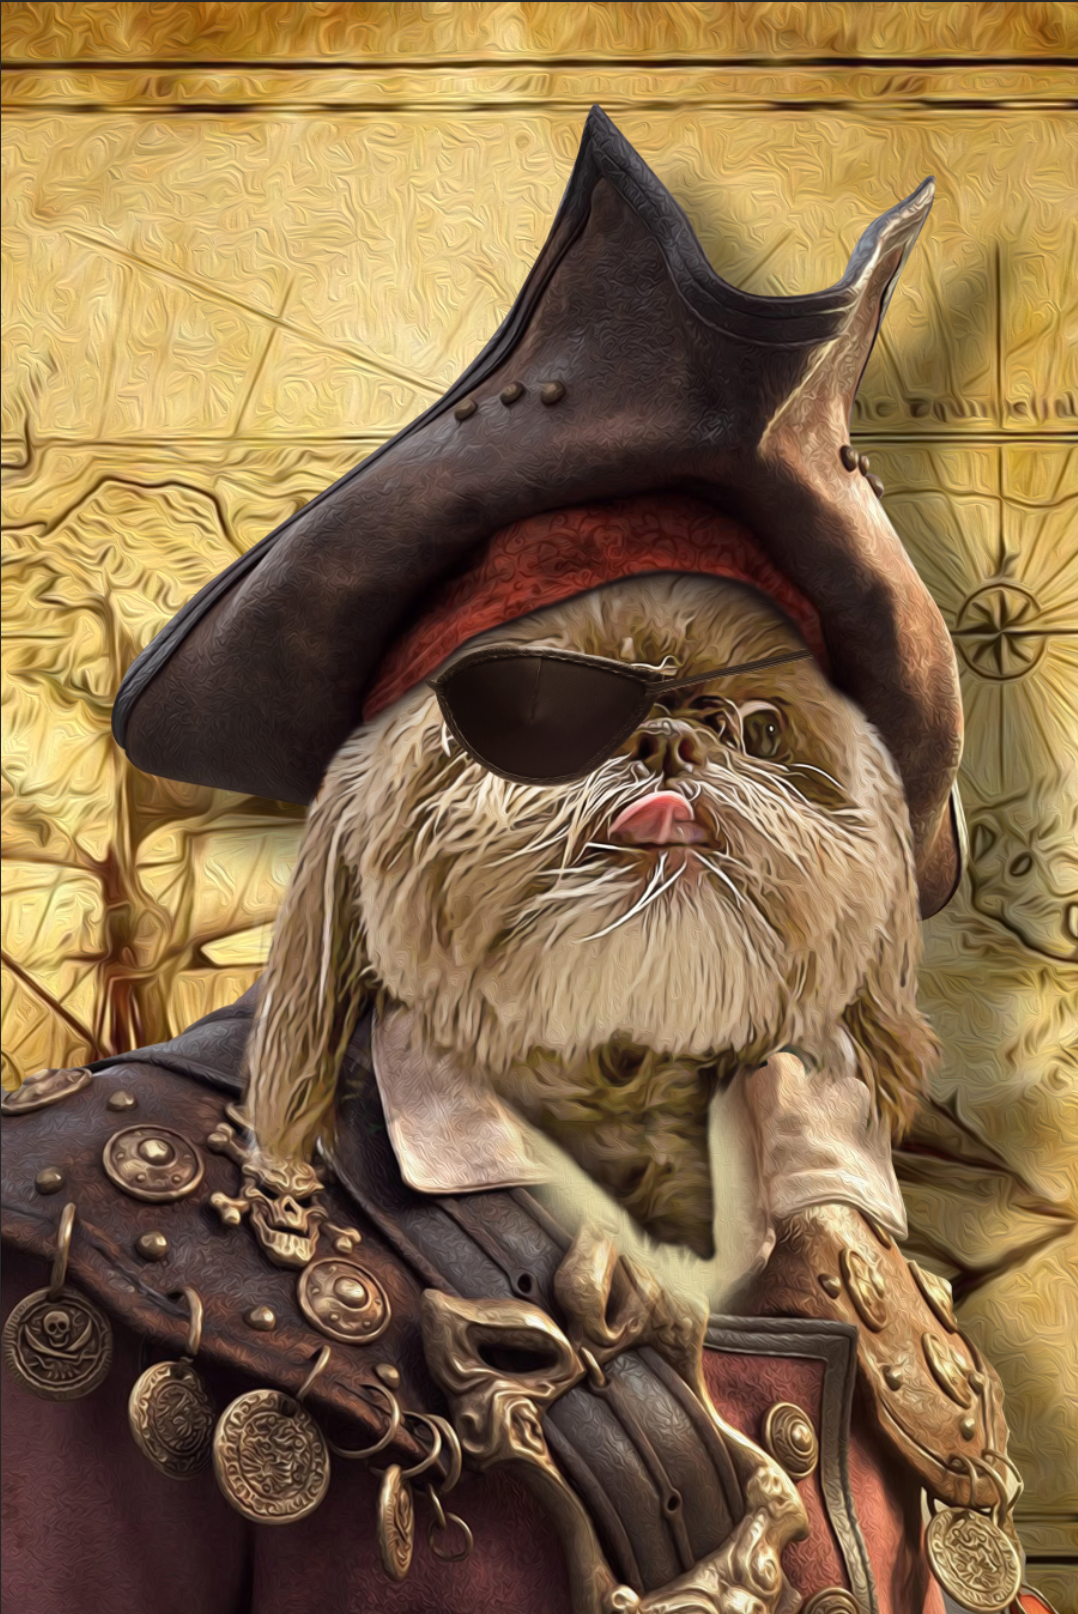 The Pirate Custom Pet Portrait Canvas - Noble Pawtrait